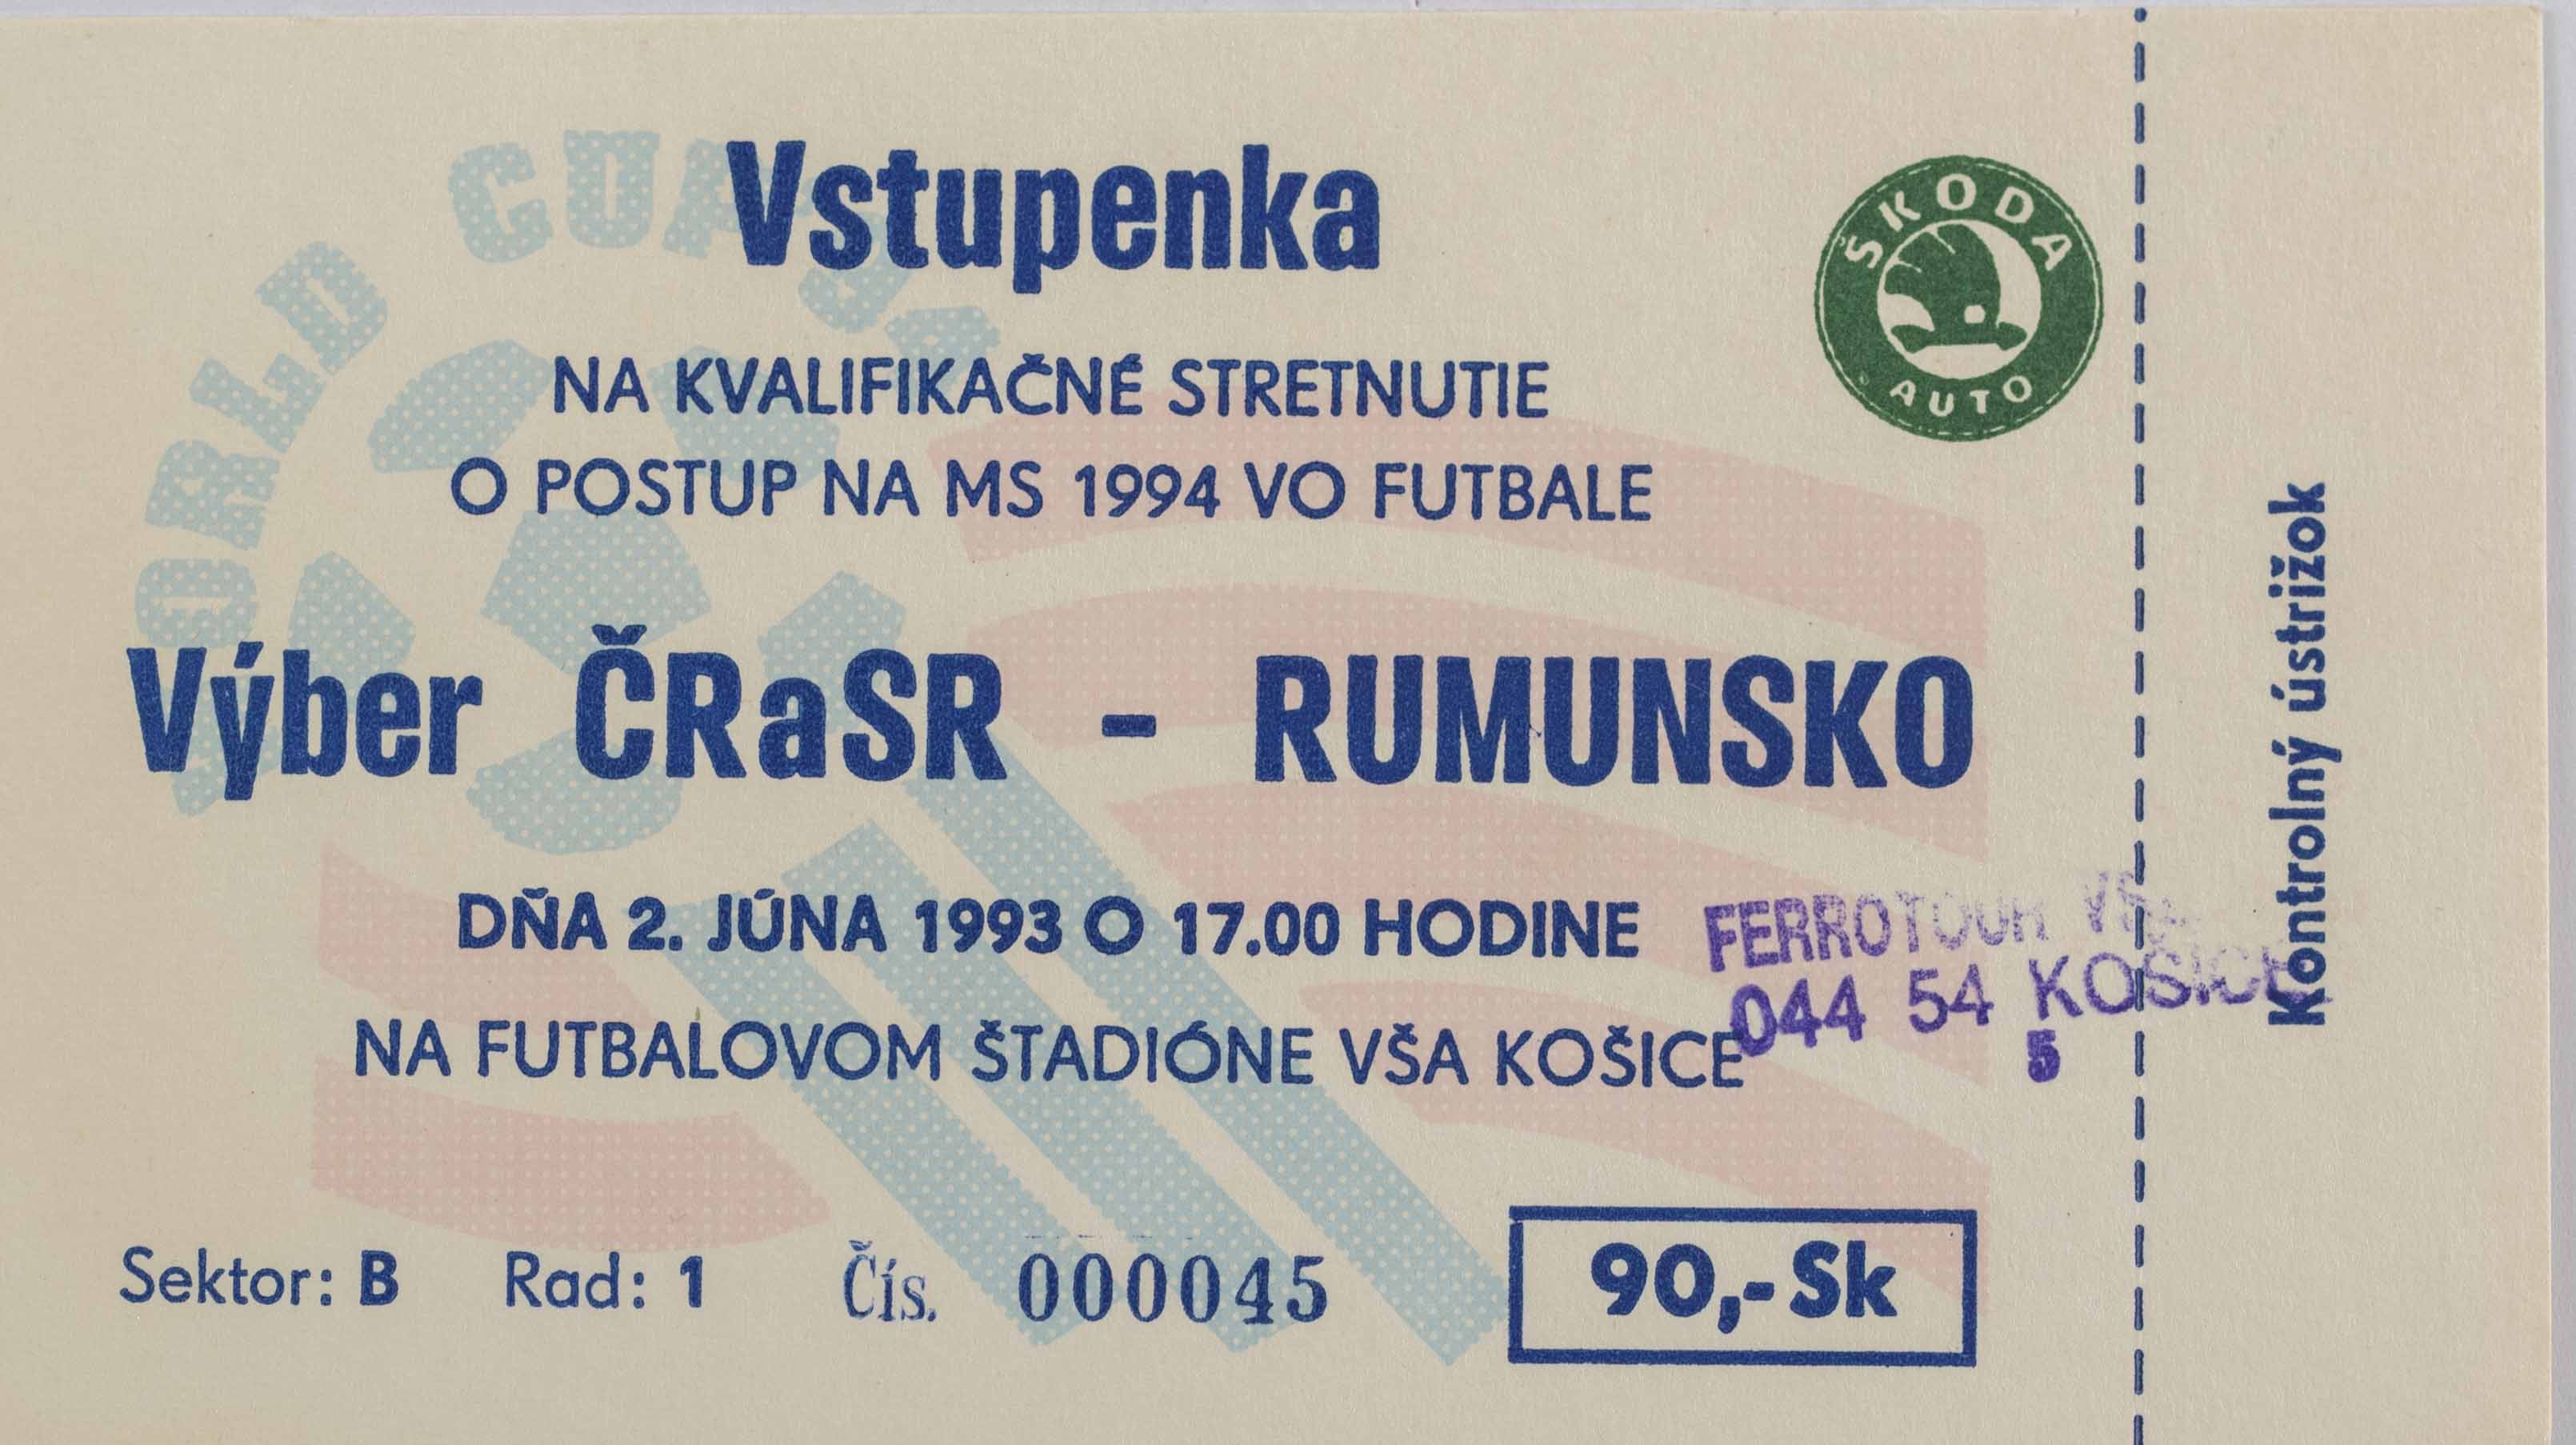 Vstupenka ČR a SR v. Rumunsko, QWM 1994, Košice, 1993